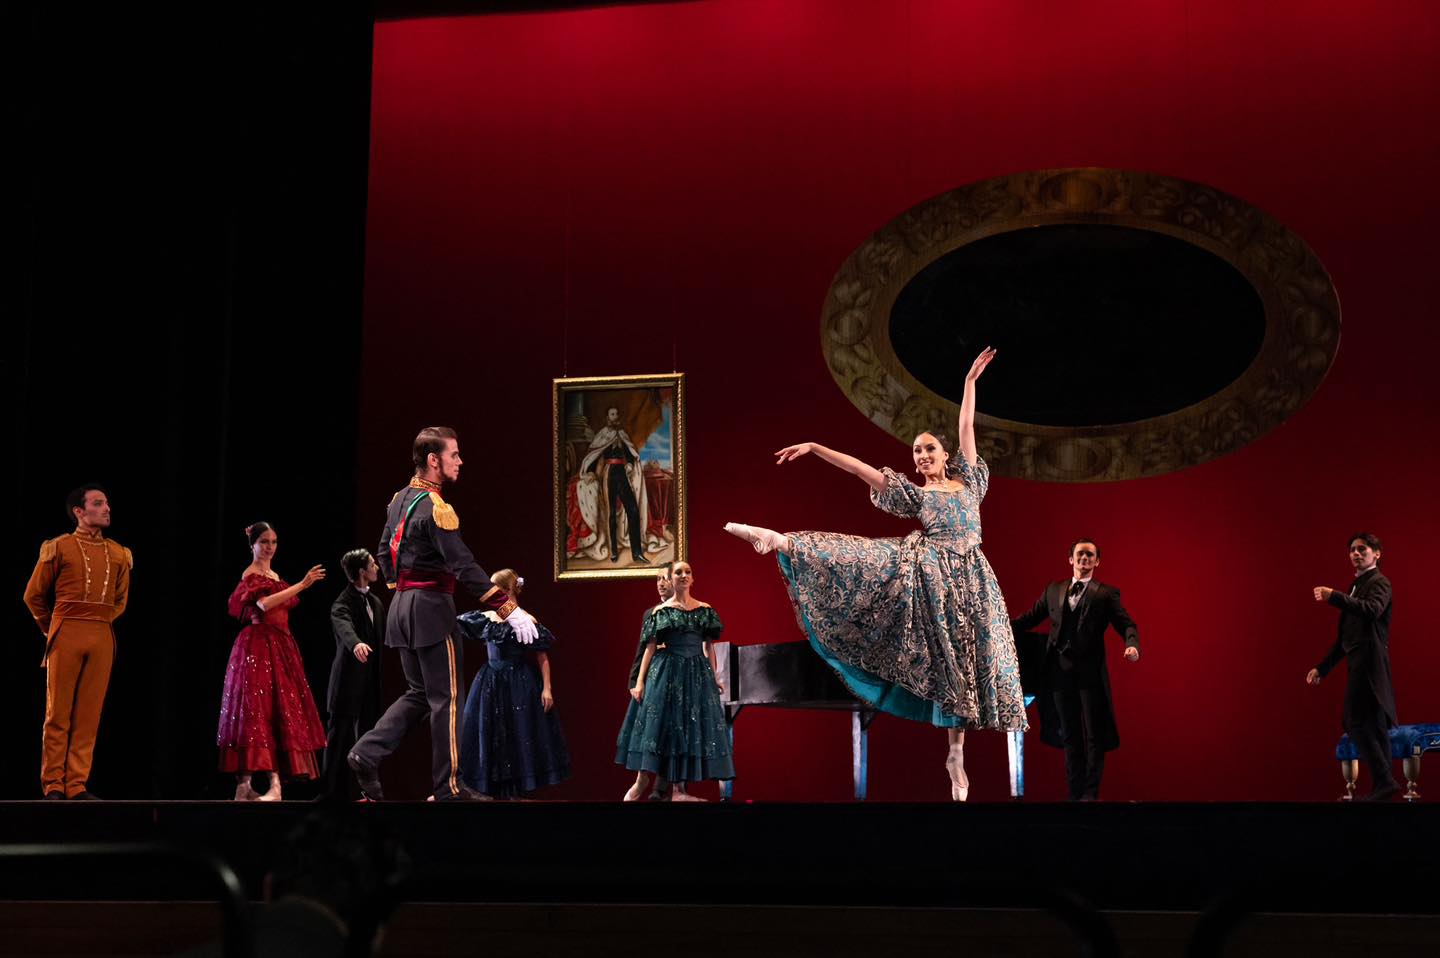 La música del ballet Maximiliano y Carlota es un trabajo de Caleb Ruiz, el cual también cuenta con la intervención en arreglos de Alejandro Vera, ambos jóvenes compositores laguneros. (CORTESÍA)